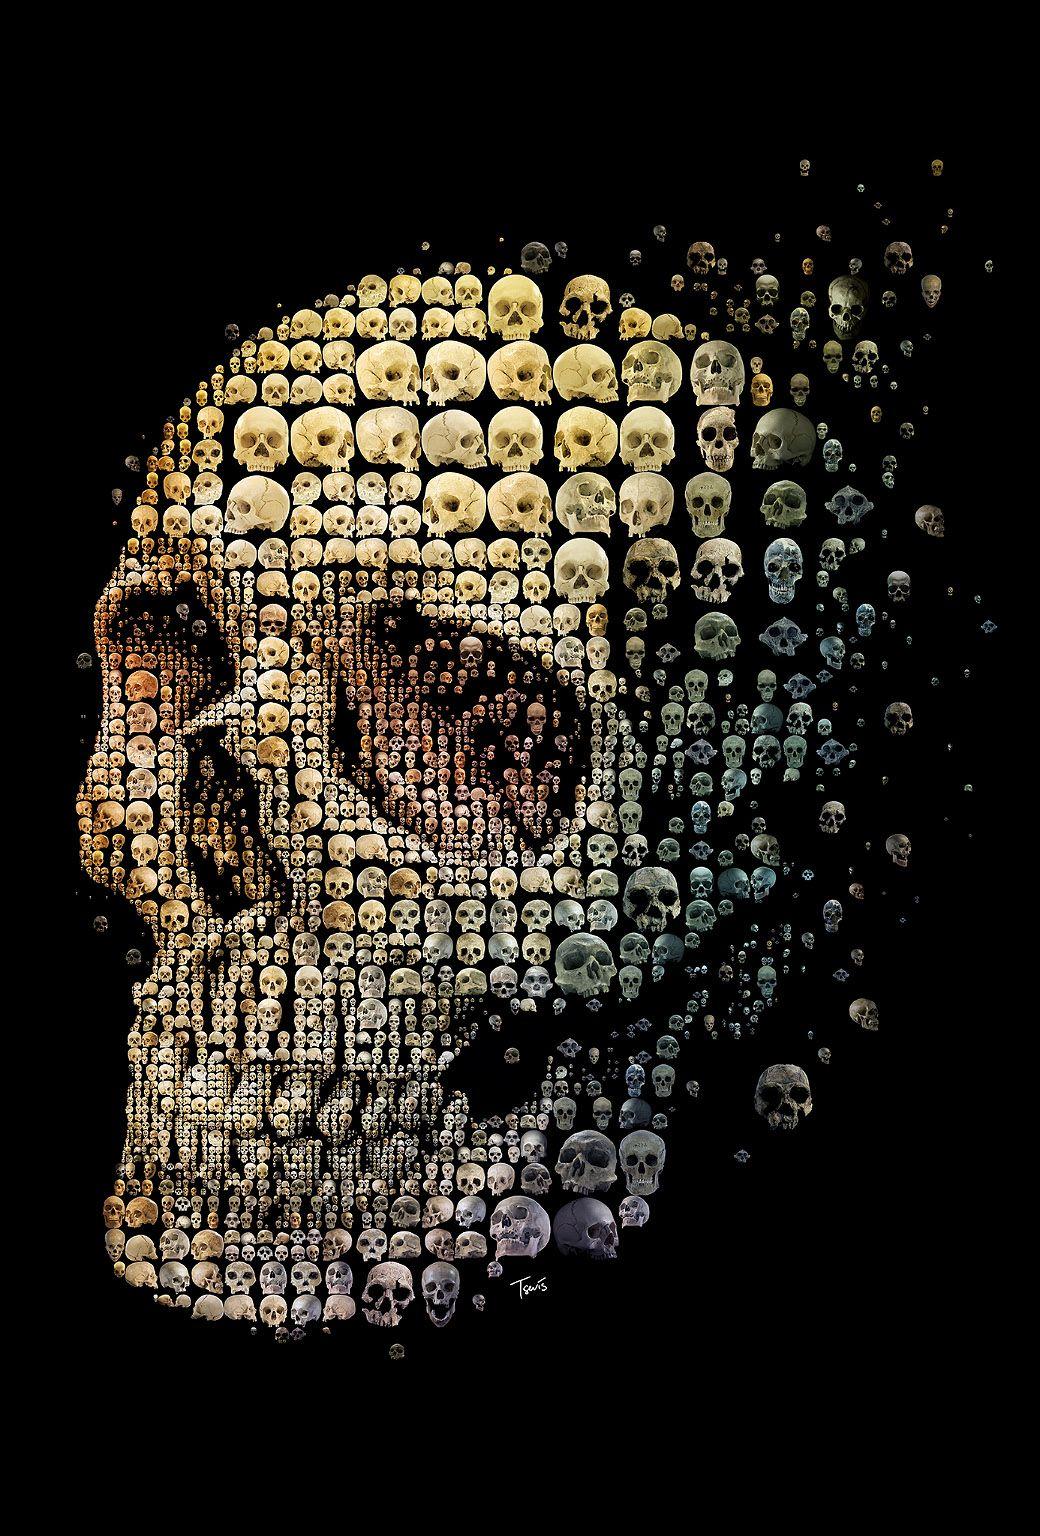 Skull iPhone Wallpaper To Darken Up Your Phone Screen